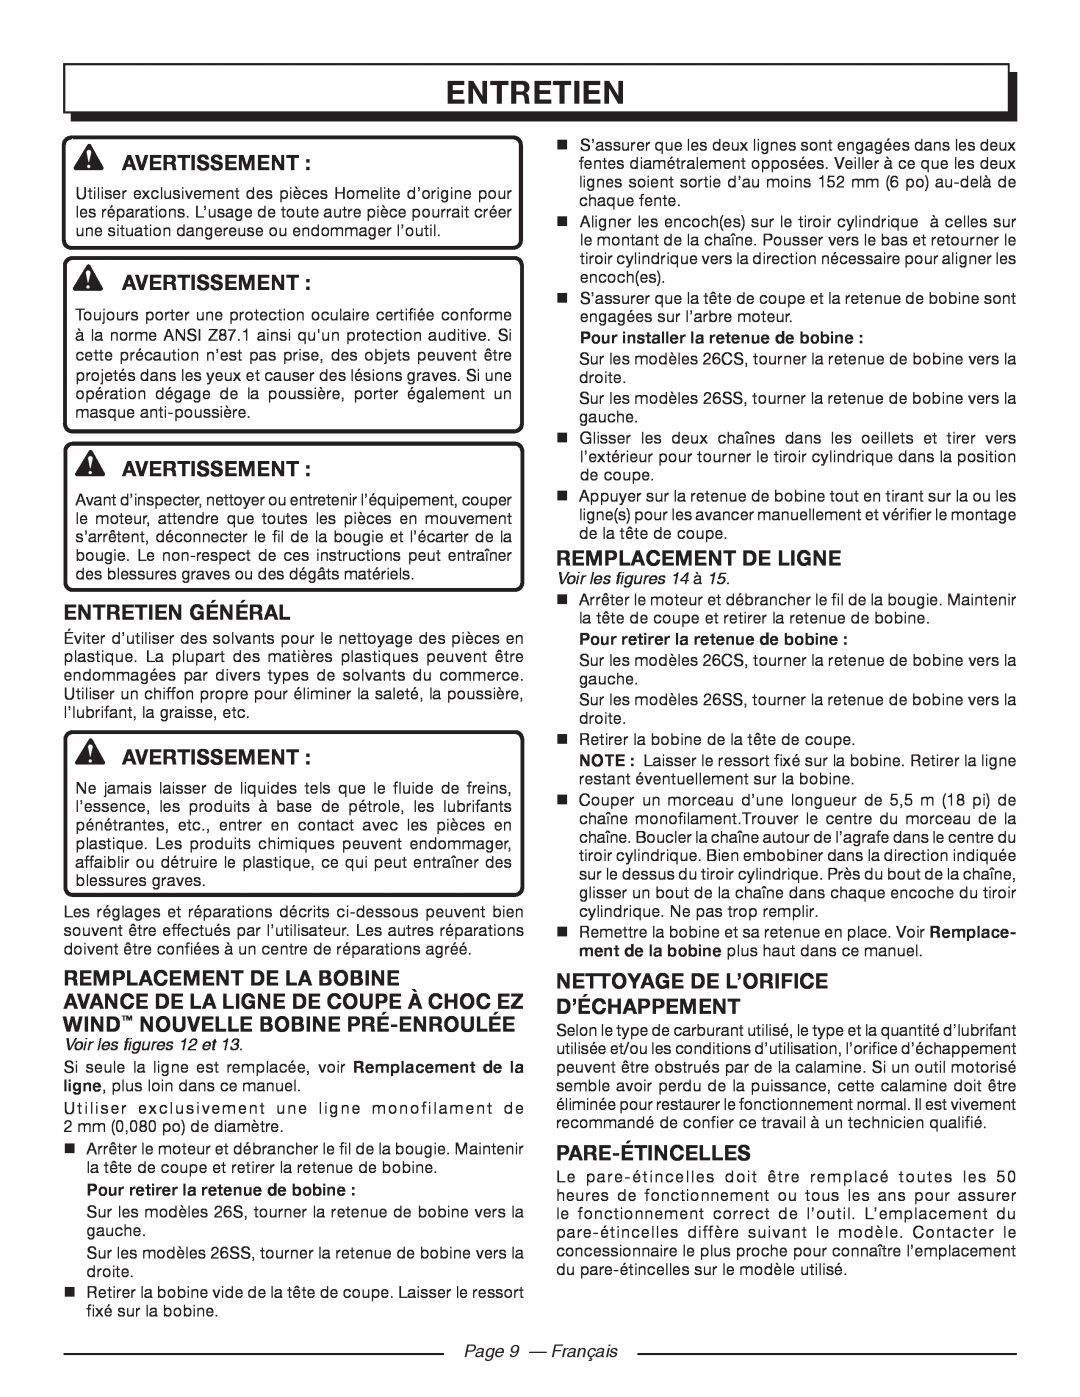 Homelite UT21006 Entretien Général, Remplacement De Ligne, Remplacement De La Bobine, Pare-Étincelles, Avertissement  